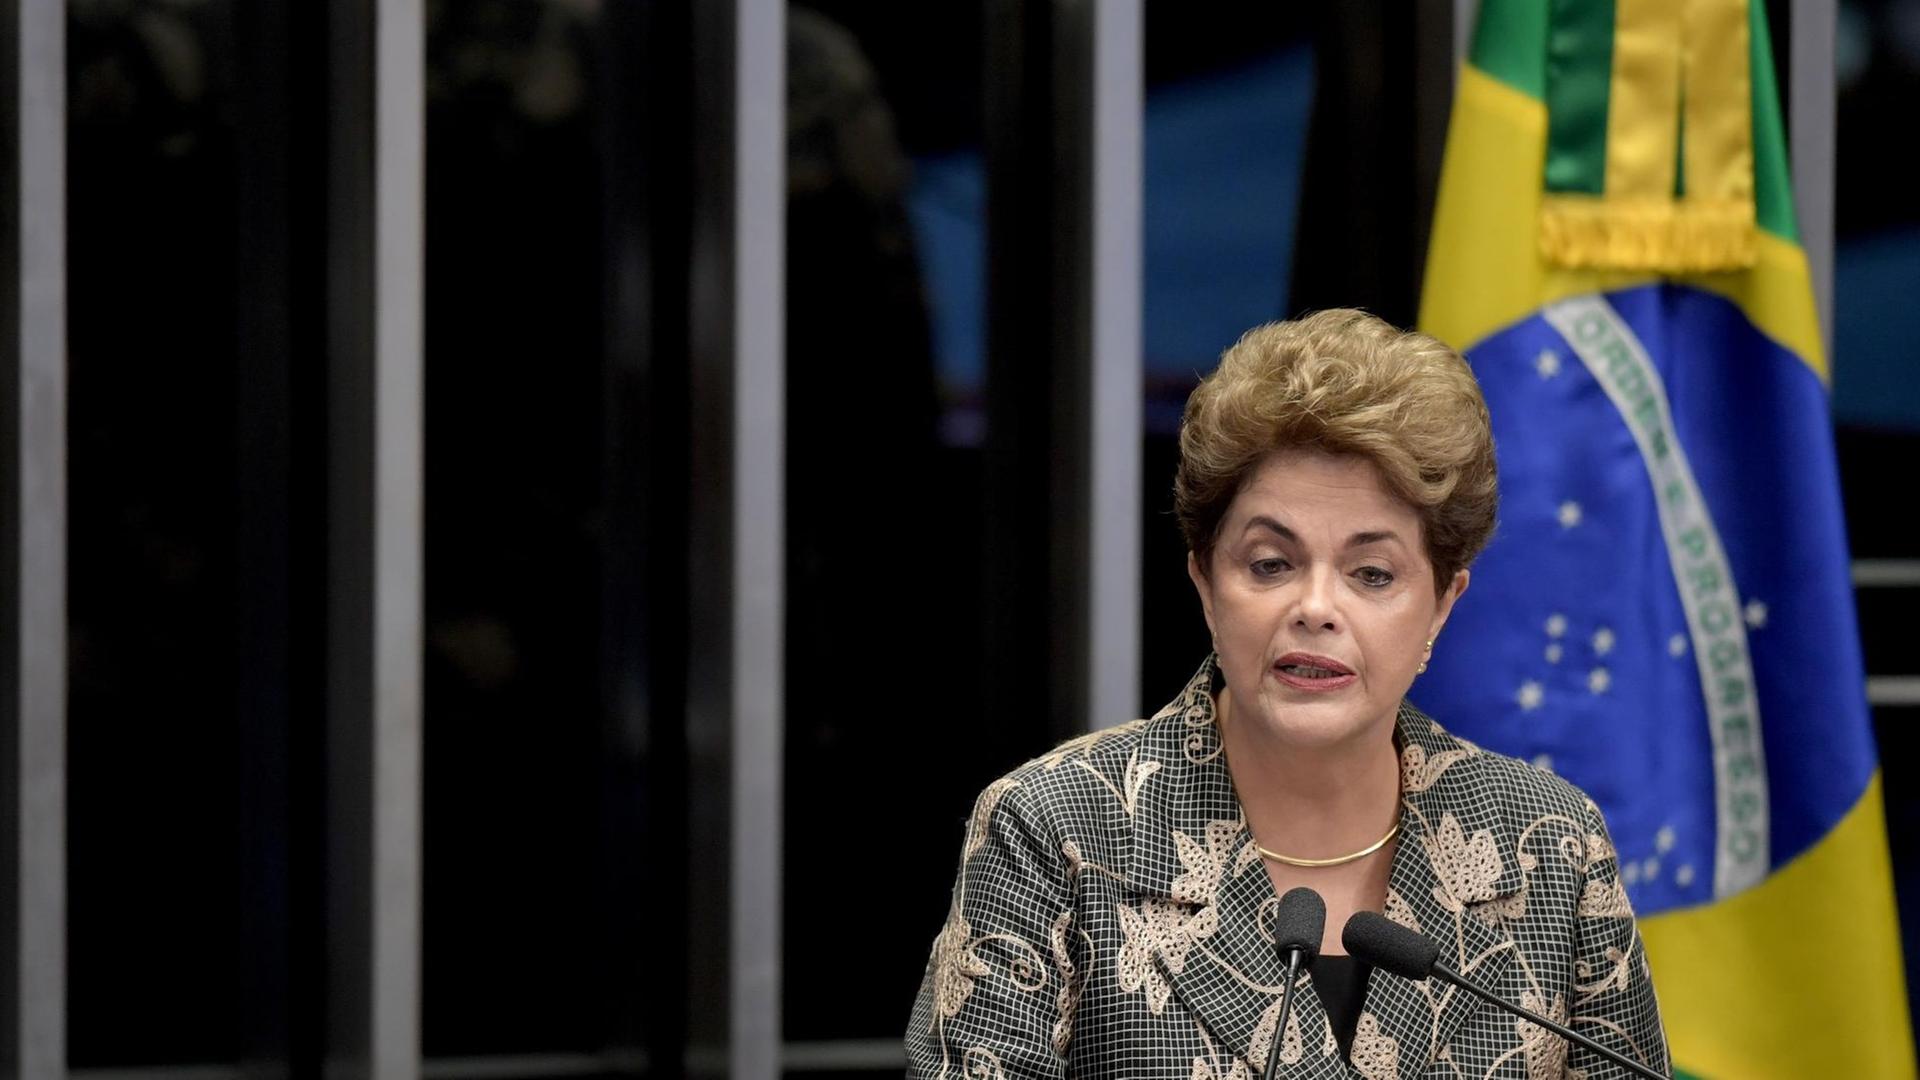 Dilma Rousseff am Rednerpult. Im Hintergrund steht eine brasilianische Flagge.